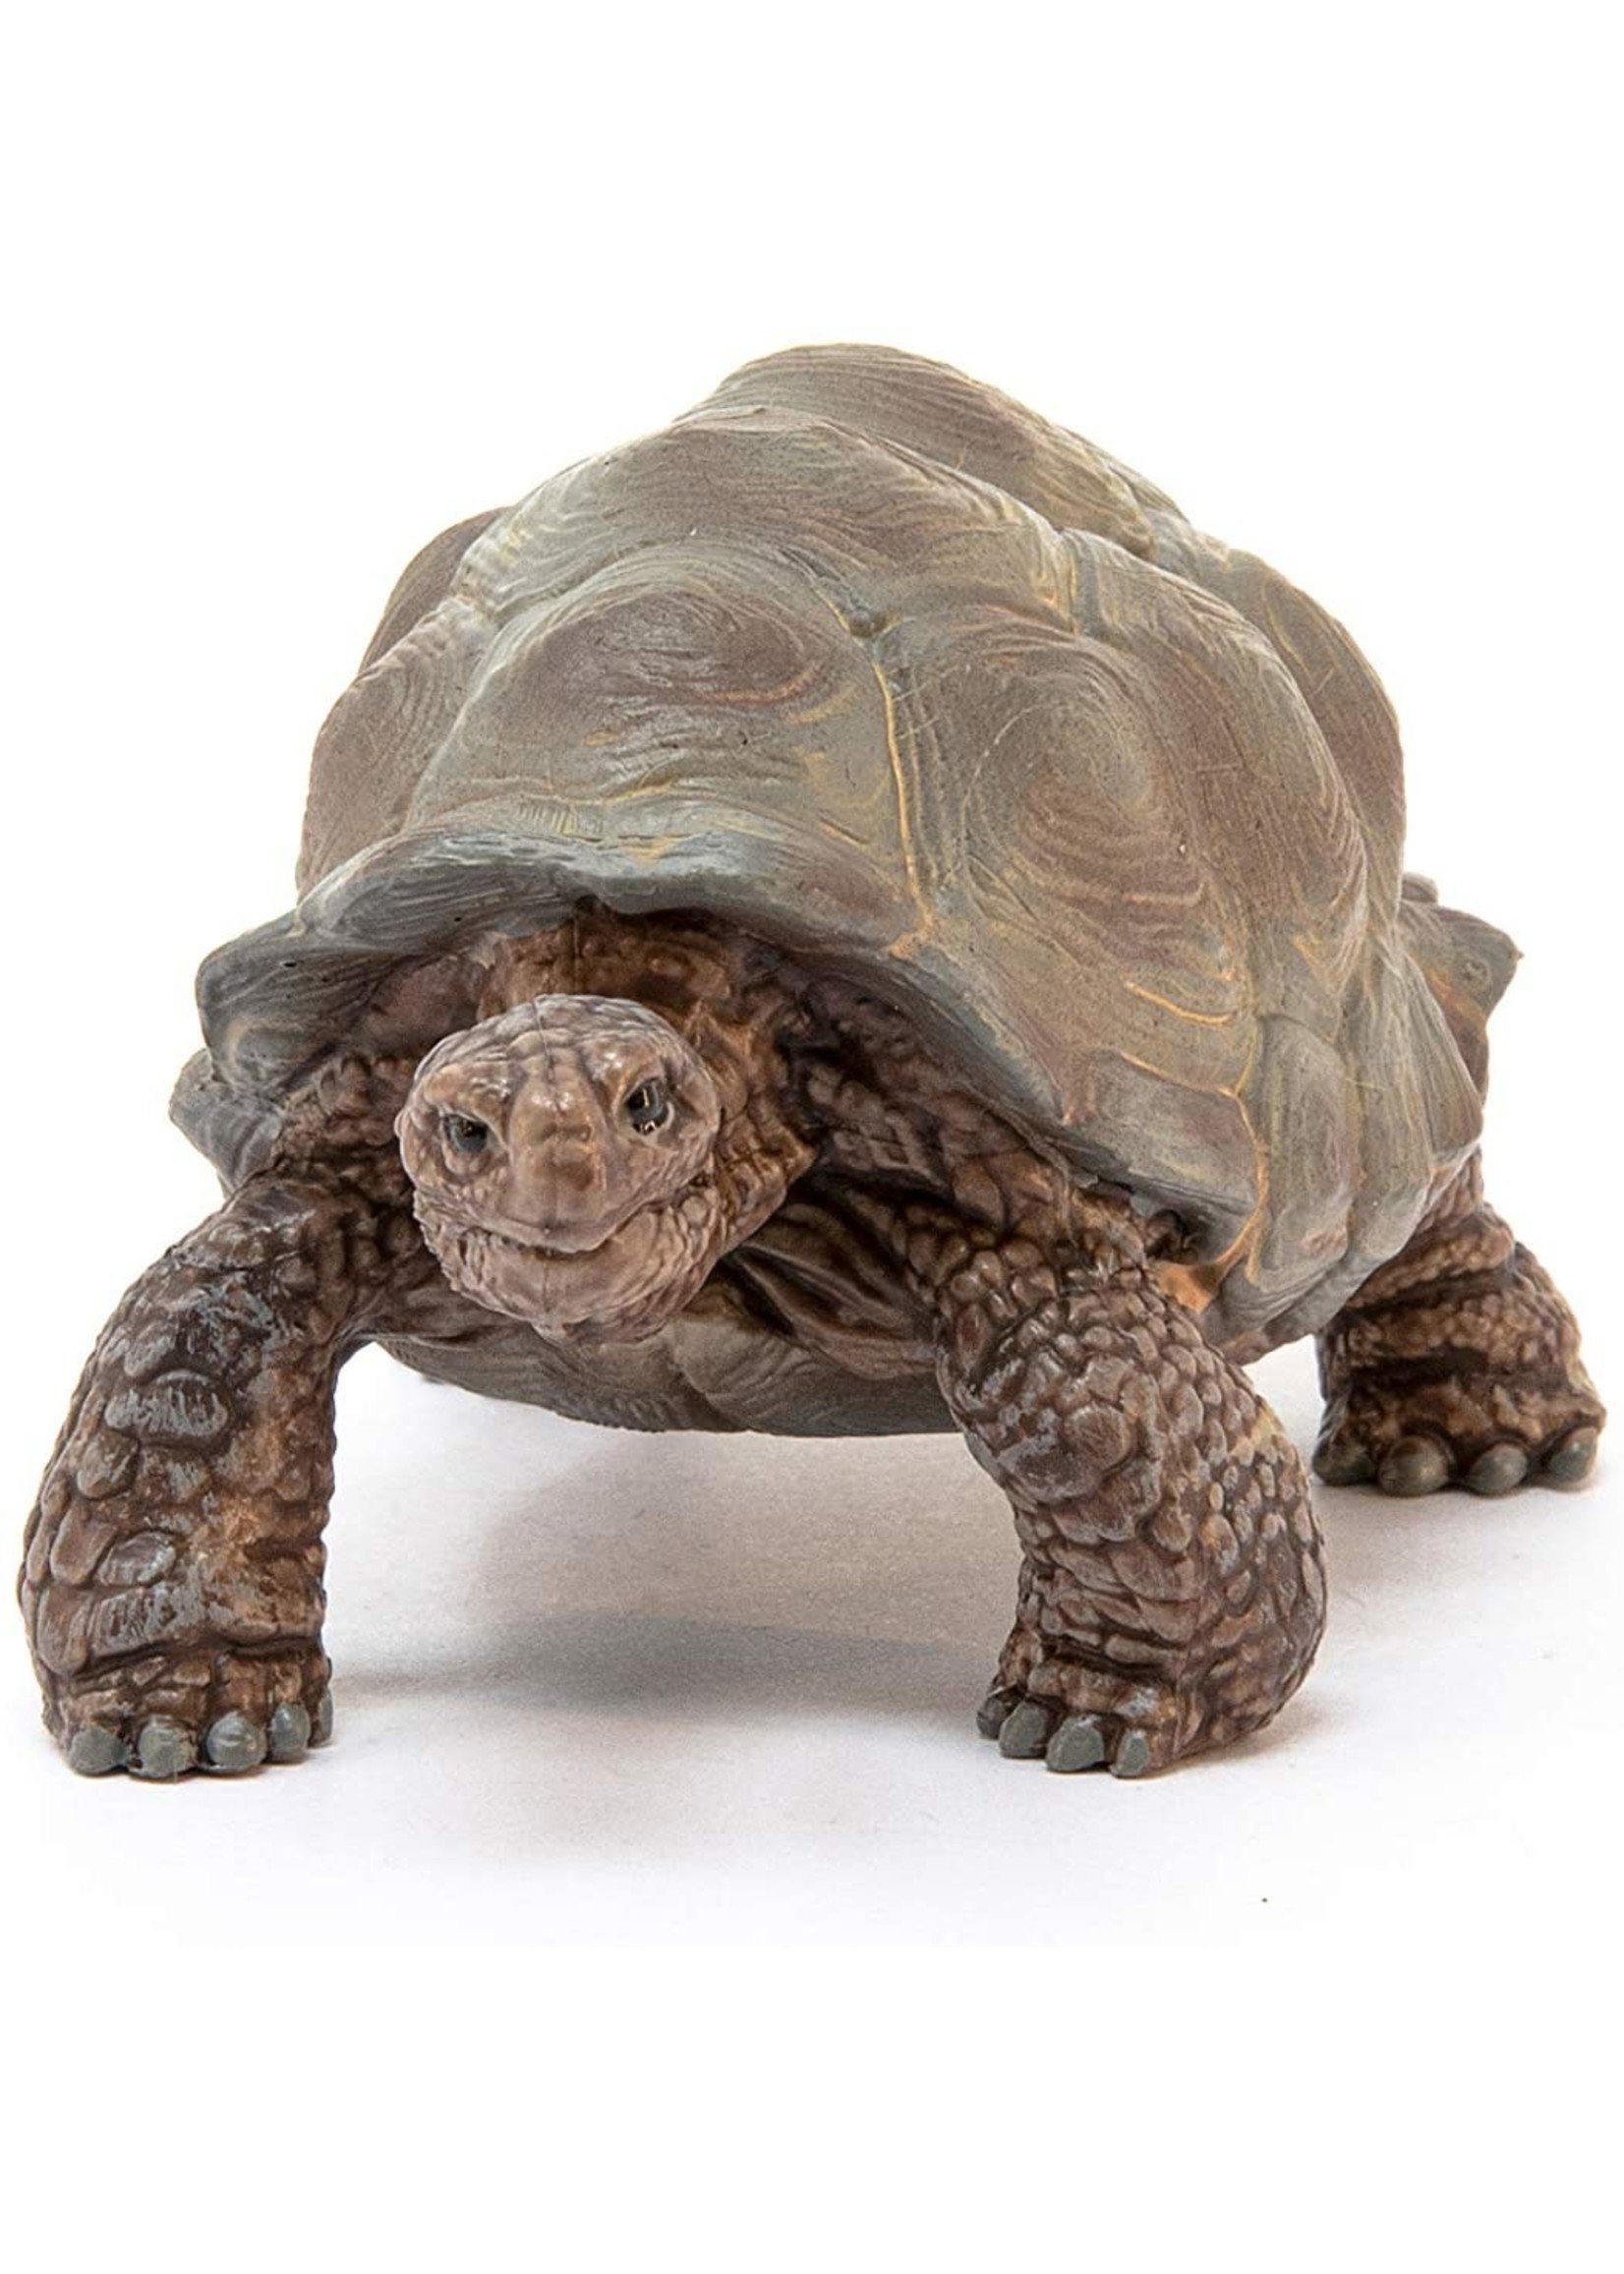 Schleich 14824 - Giant Tortoise